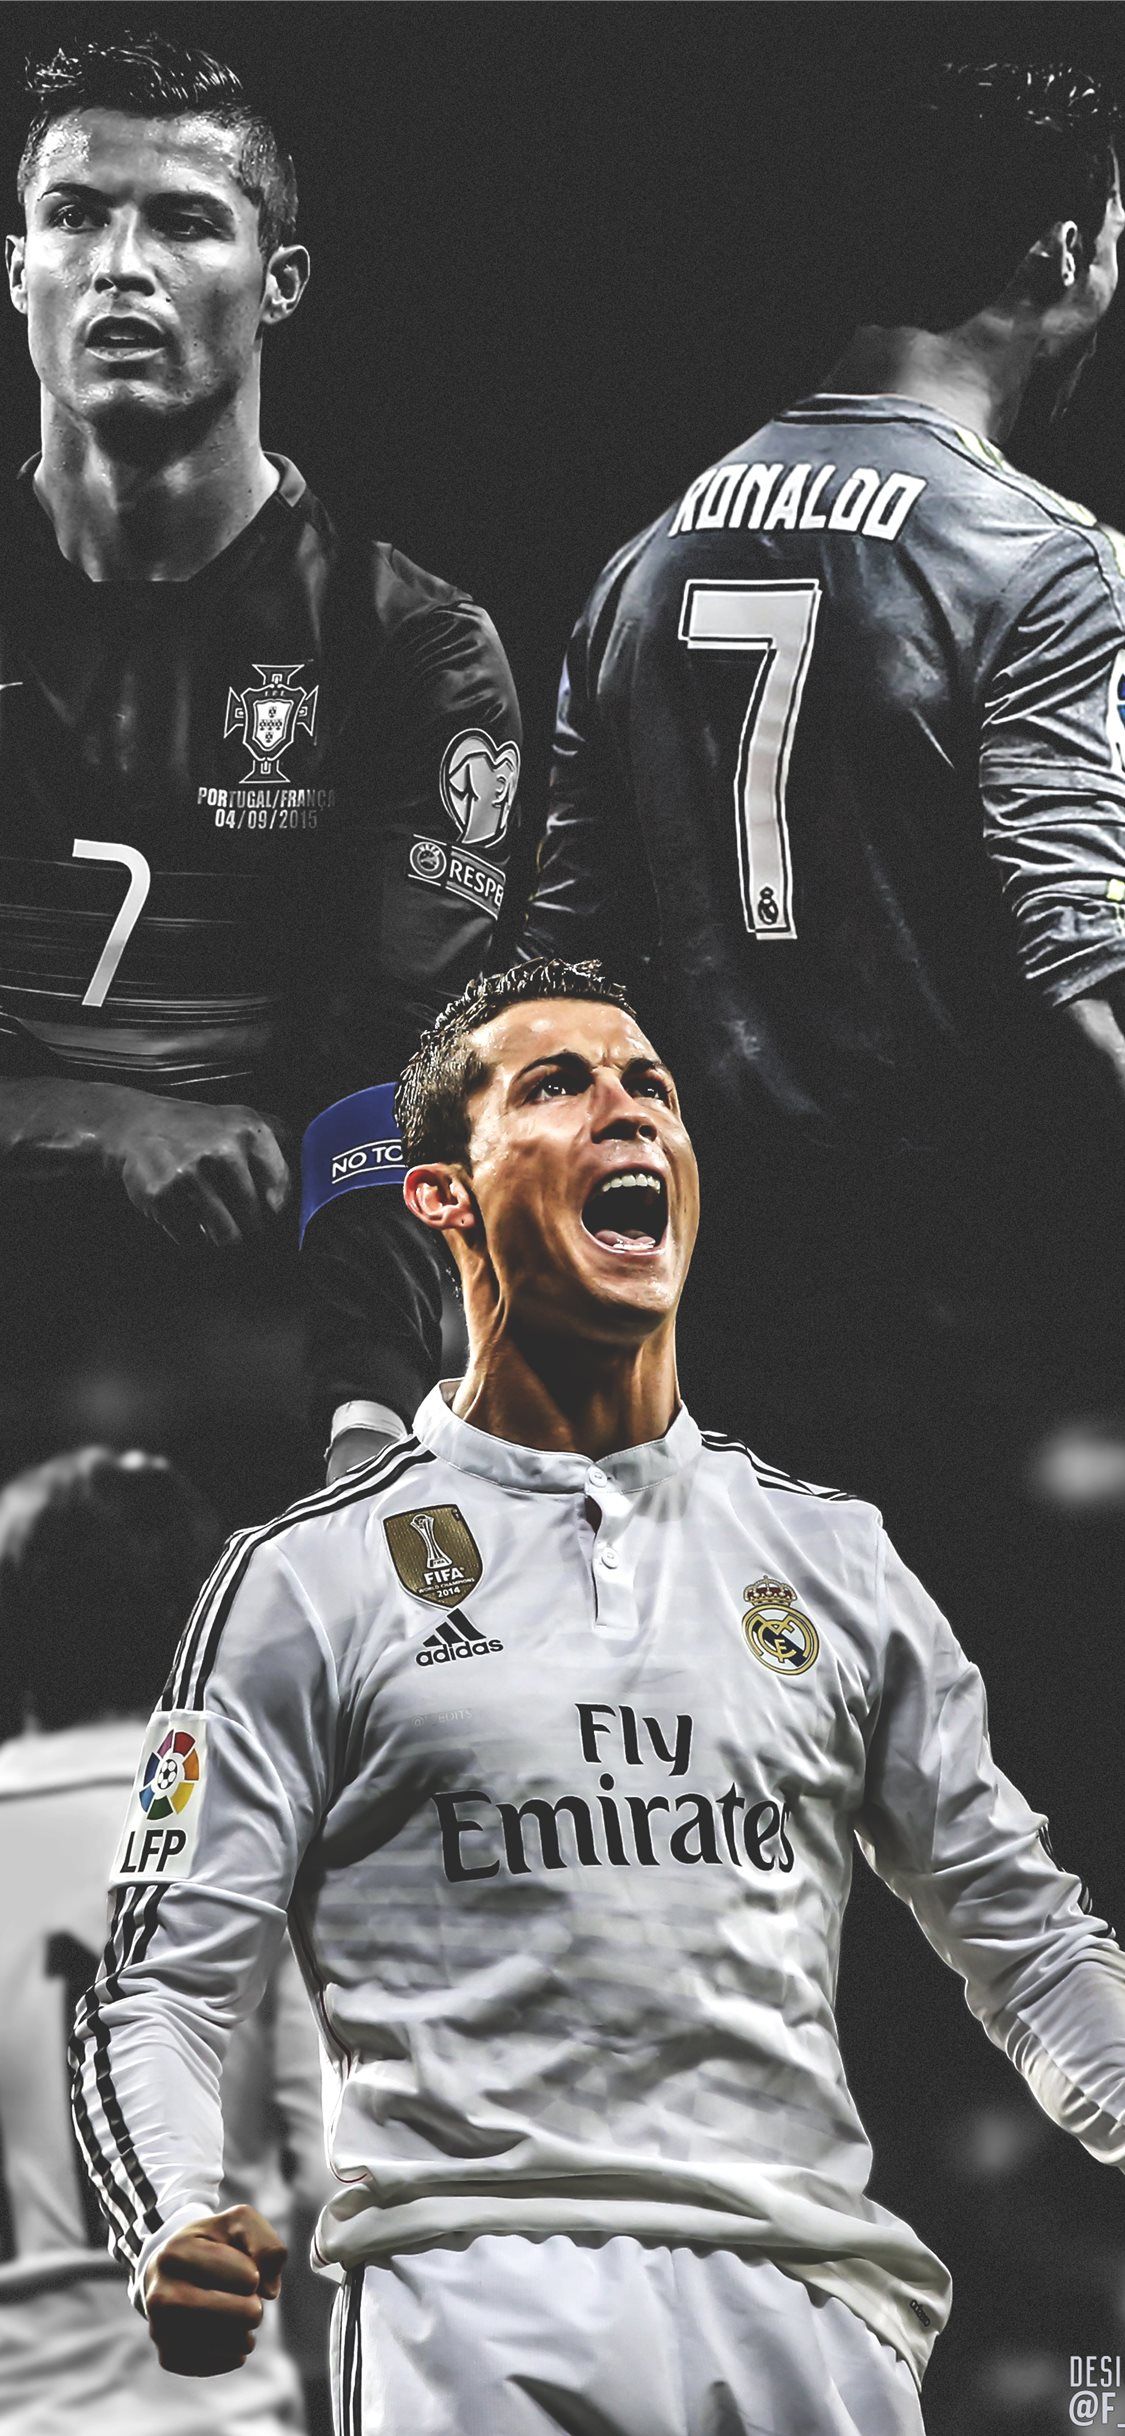 Cristiano Ronaldo Footballer iPhone Wallpaper iphoneswallpapers com  iPhone  Wallpapers  iPhone Wallpapers